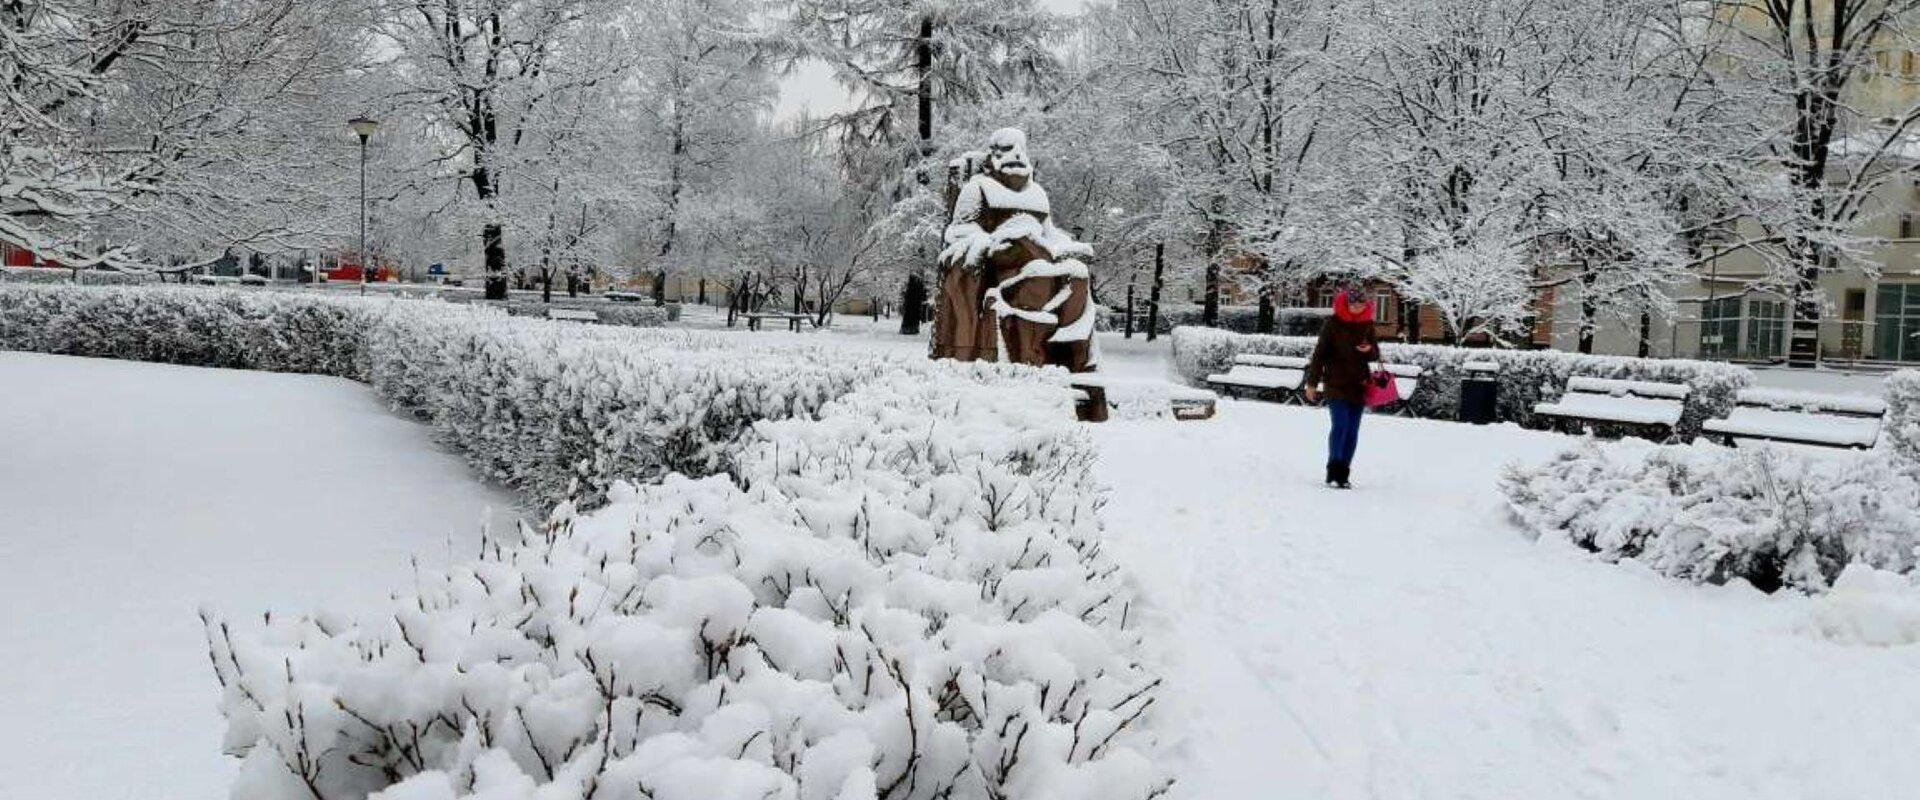 Snowy Hurda Park in Tartu